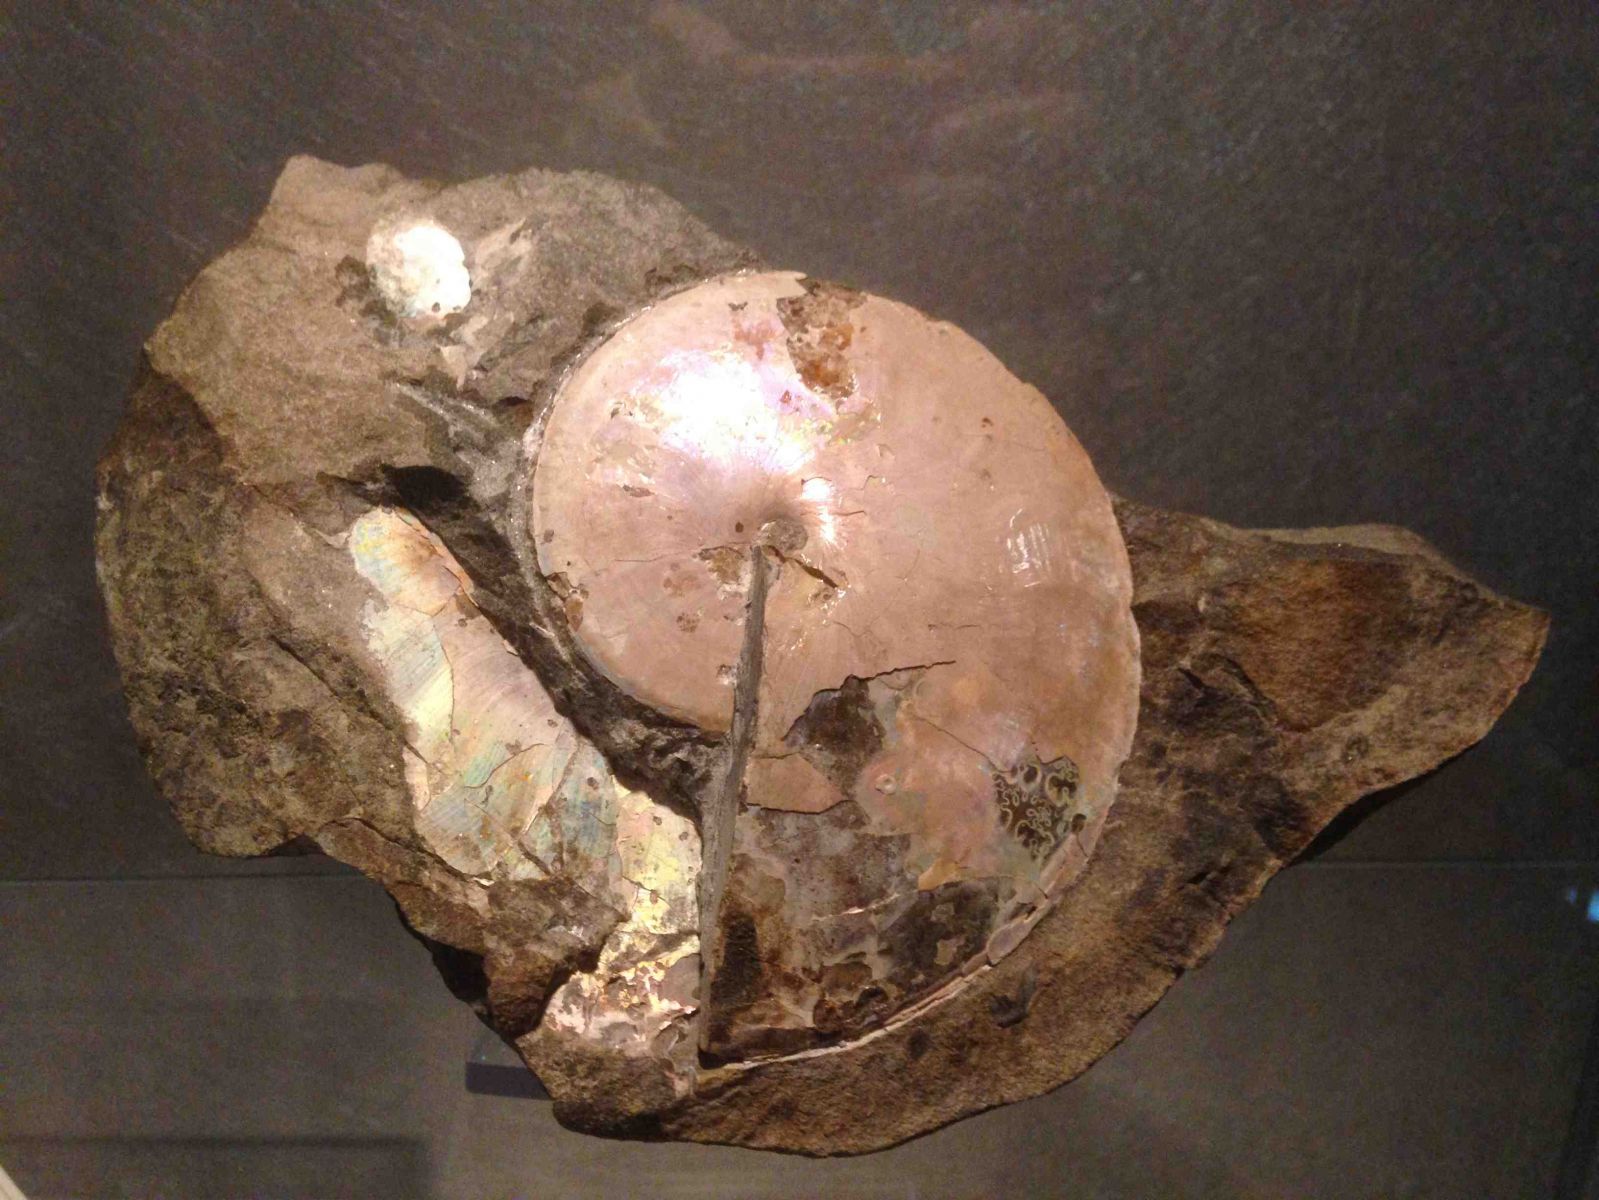 Sphenodiscus ammonite